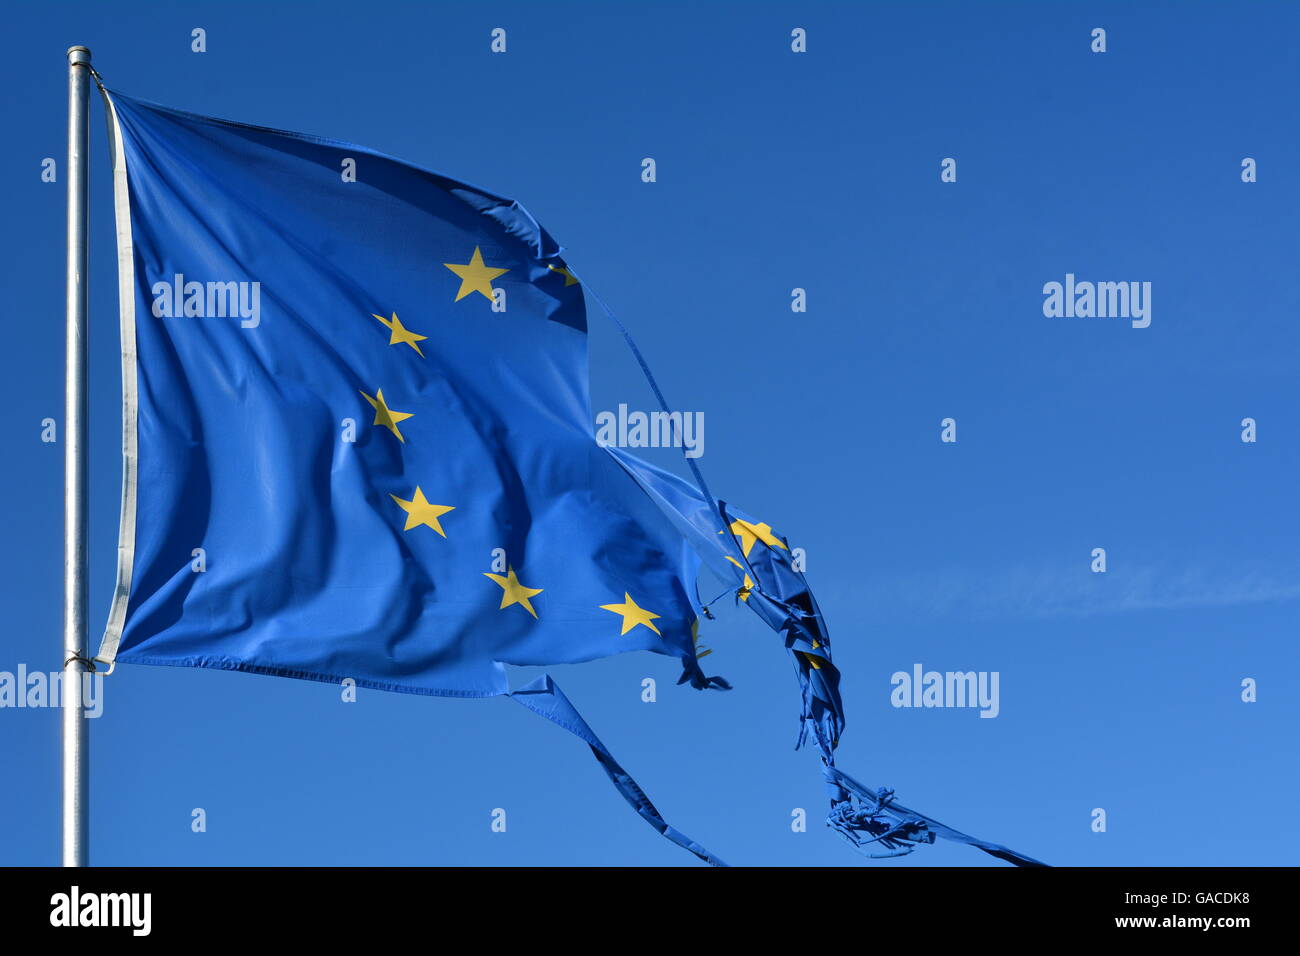 L'Unione europea dodici stelle bandiera strappata e con nodi di vento sul cielo blu Foto Stock